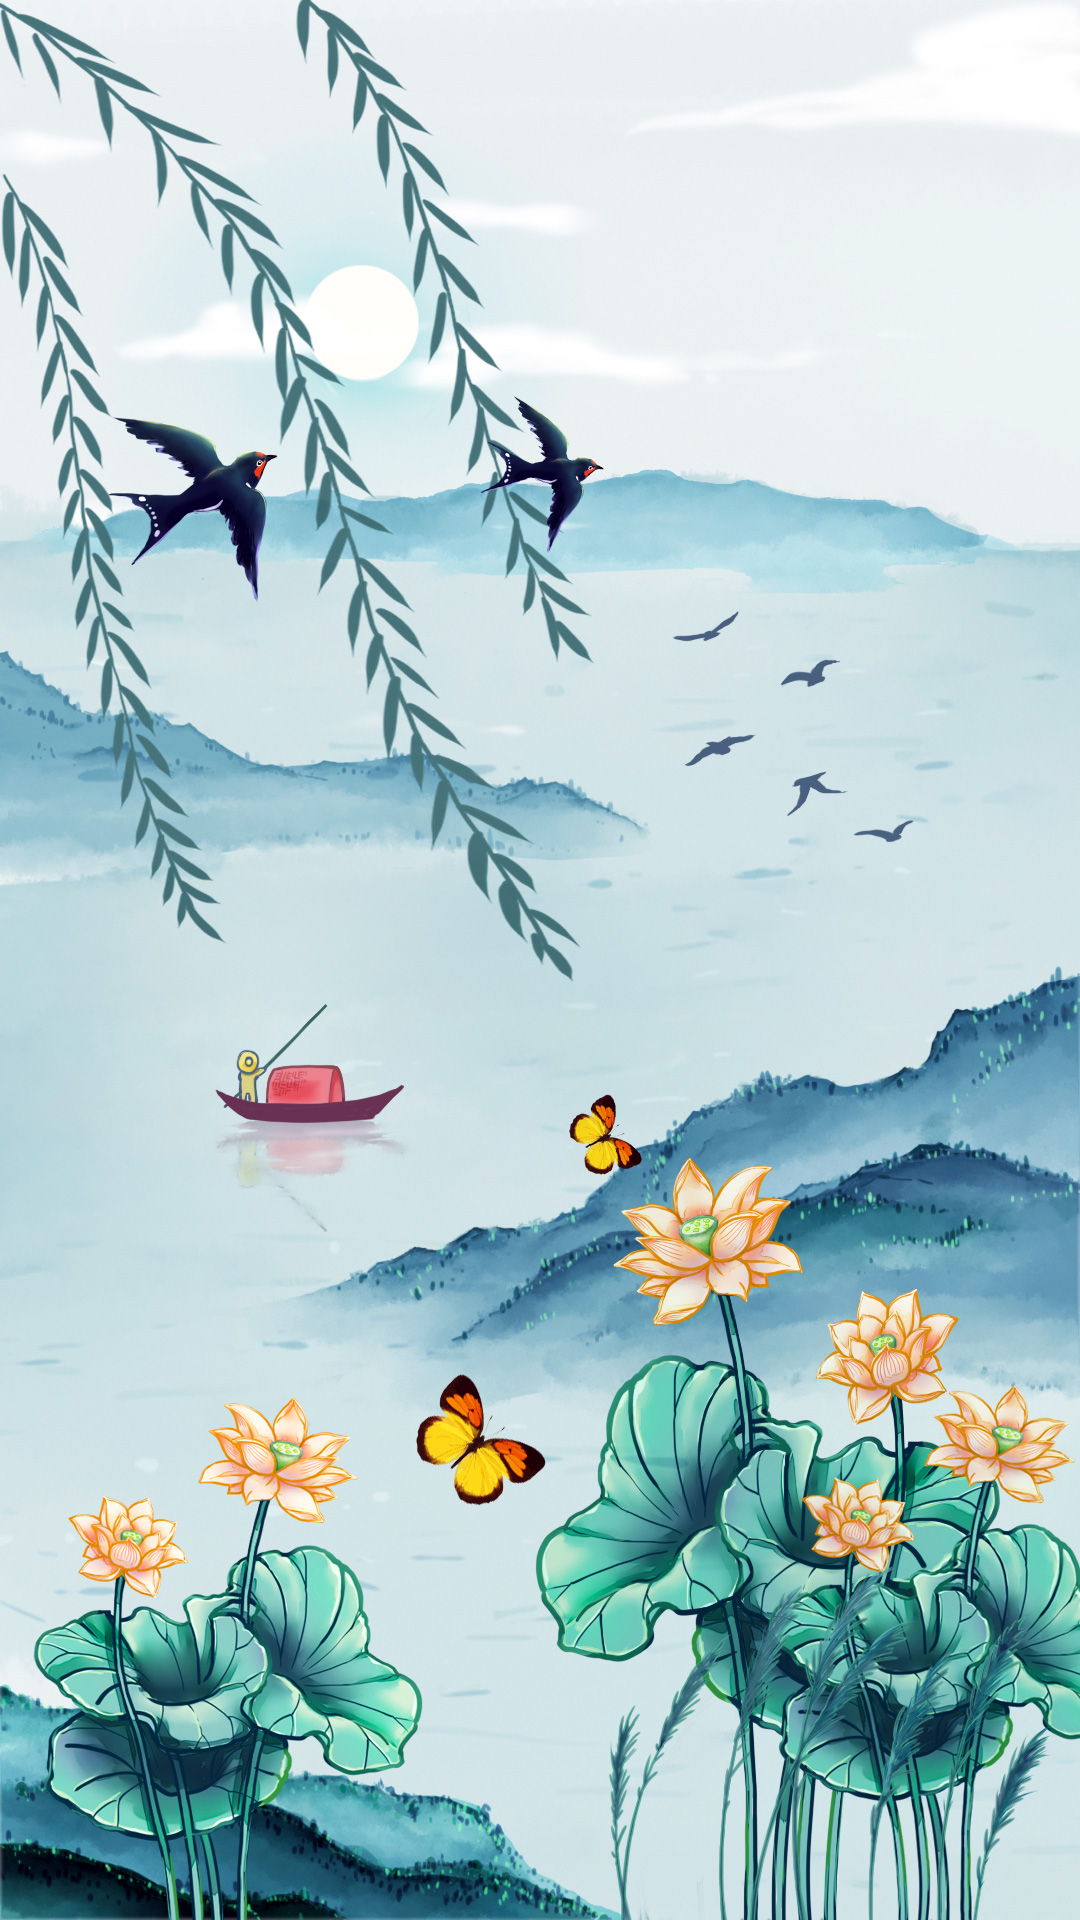 荷花、蝴蝶、燕子、小船